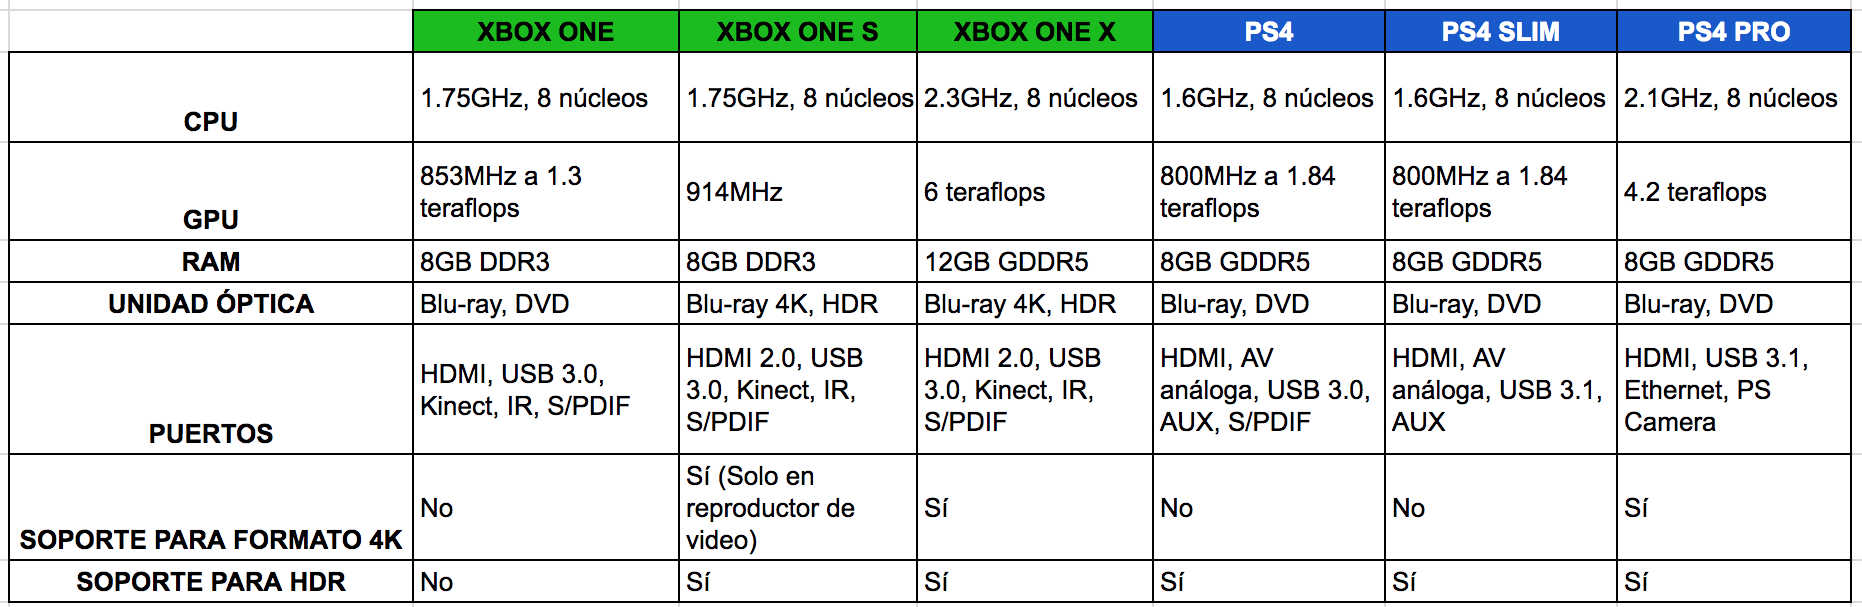 Разница xbox one. Xbox one x и PLAYSTATION 4 Slim. Xbox one x терафлопс. Xbox one s терафлопс. Характеристики Xbox Series s и ps4 Slim.